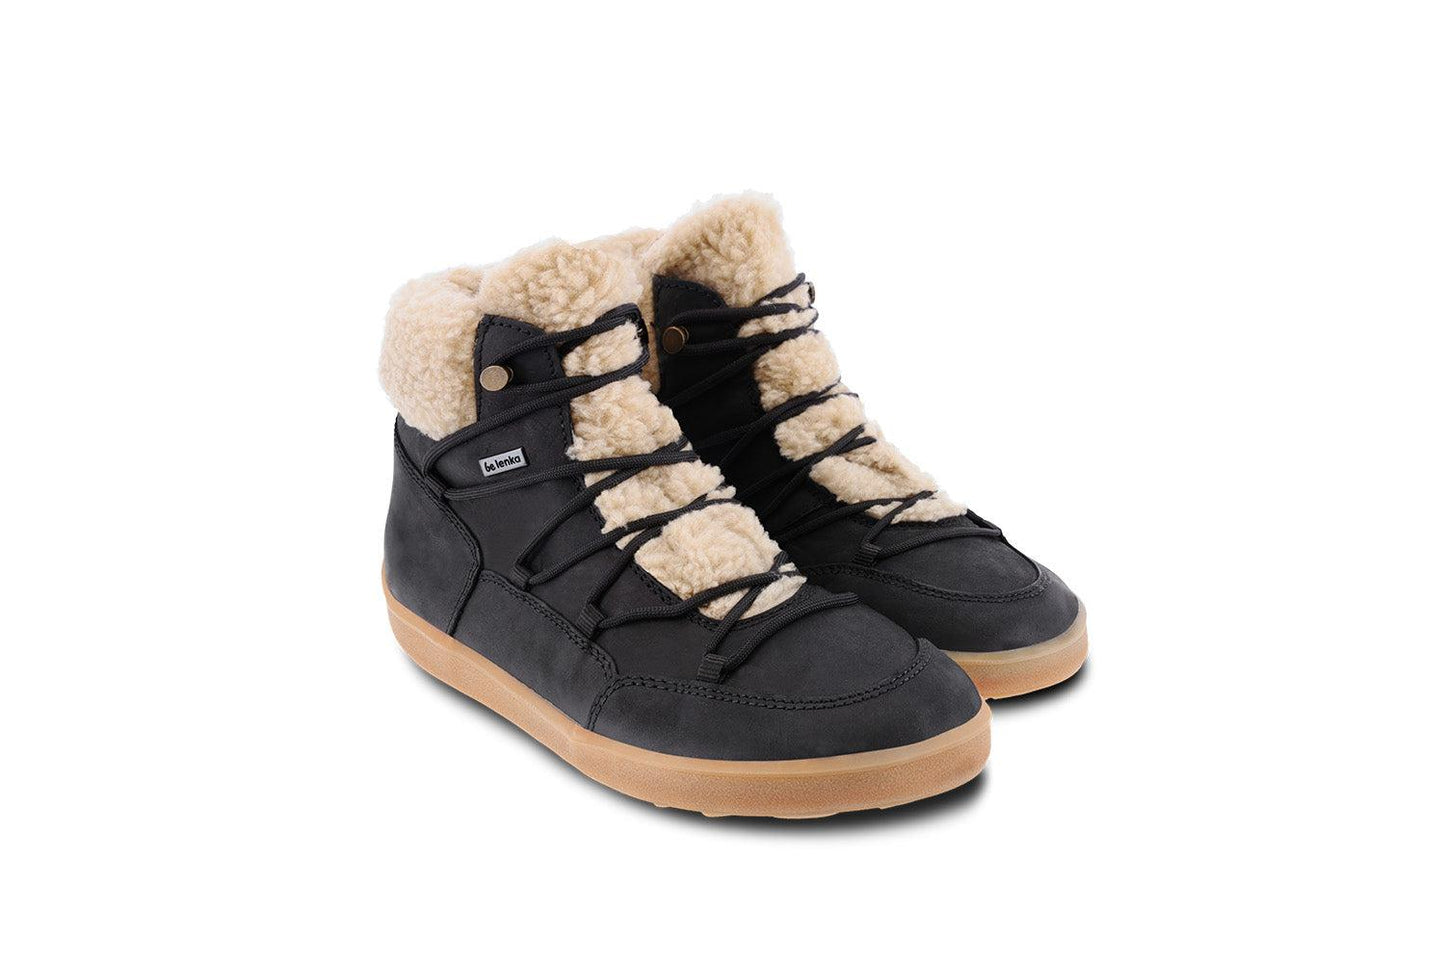 Winter Barefoot Boots Be Lenka Bliss - Black-Be Lenka-Cacles Barefoot